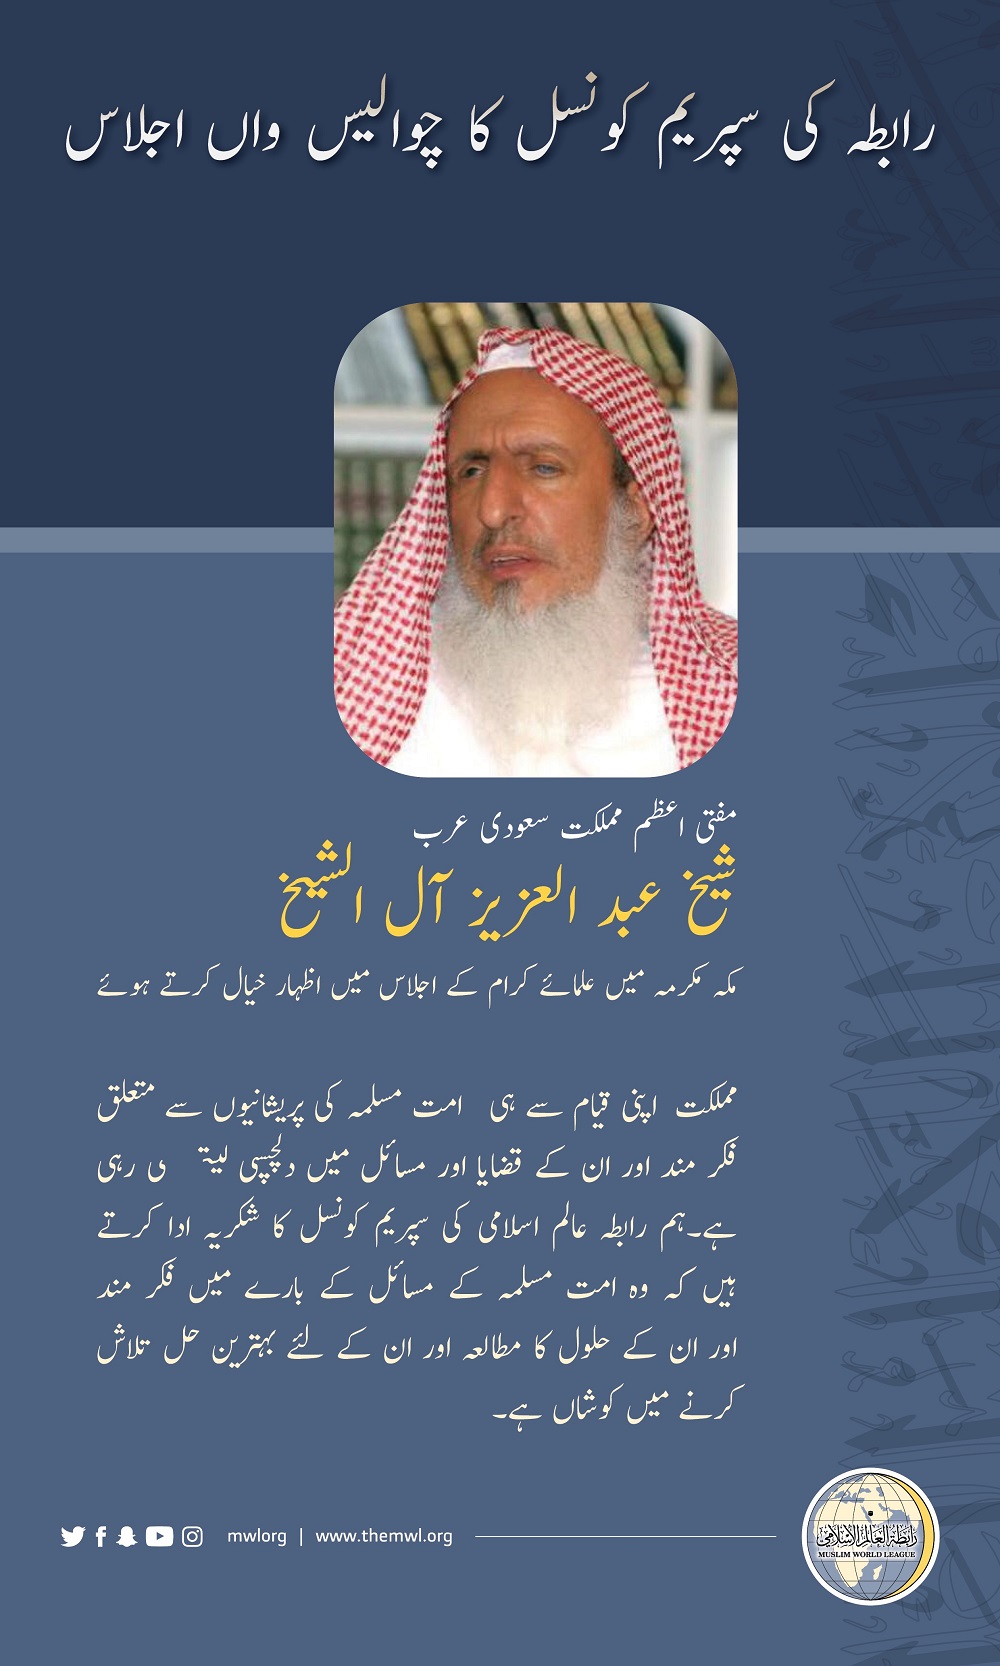 مفتی اعظم مملکت سعودی عرب شیخ عبد العزیز آل شیخ مکہ میں علمائے کرام کے اجلاس میں اظہارخیال کرتے ہوئے: